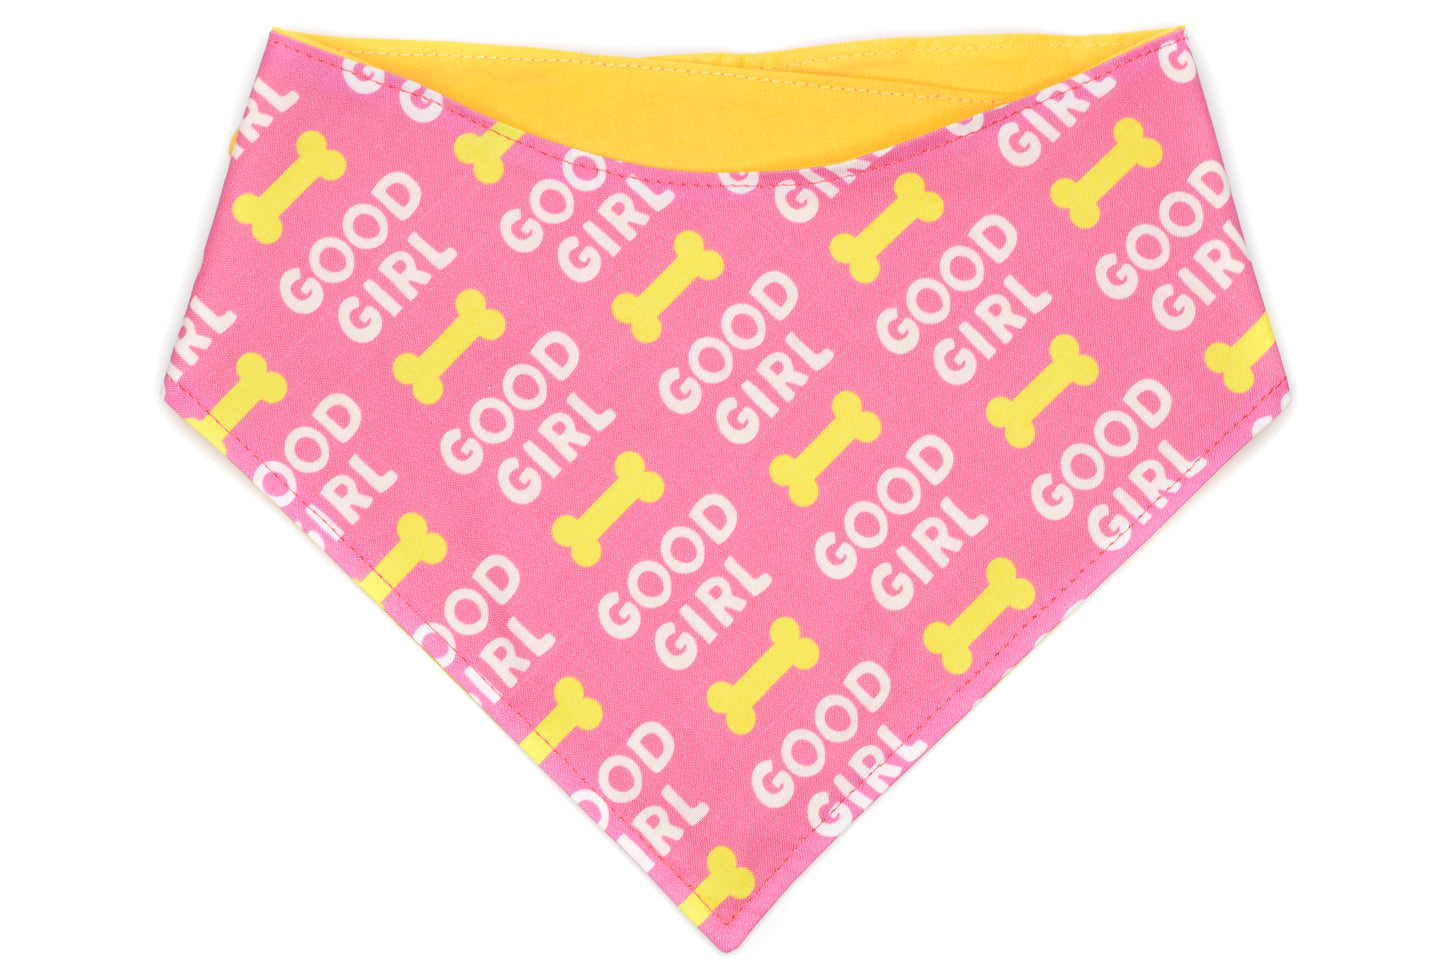 Doggie Bandana - Good Girl Pink, Yellow